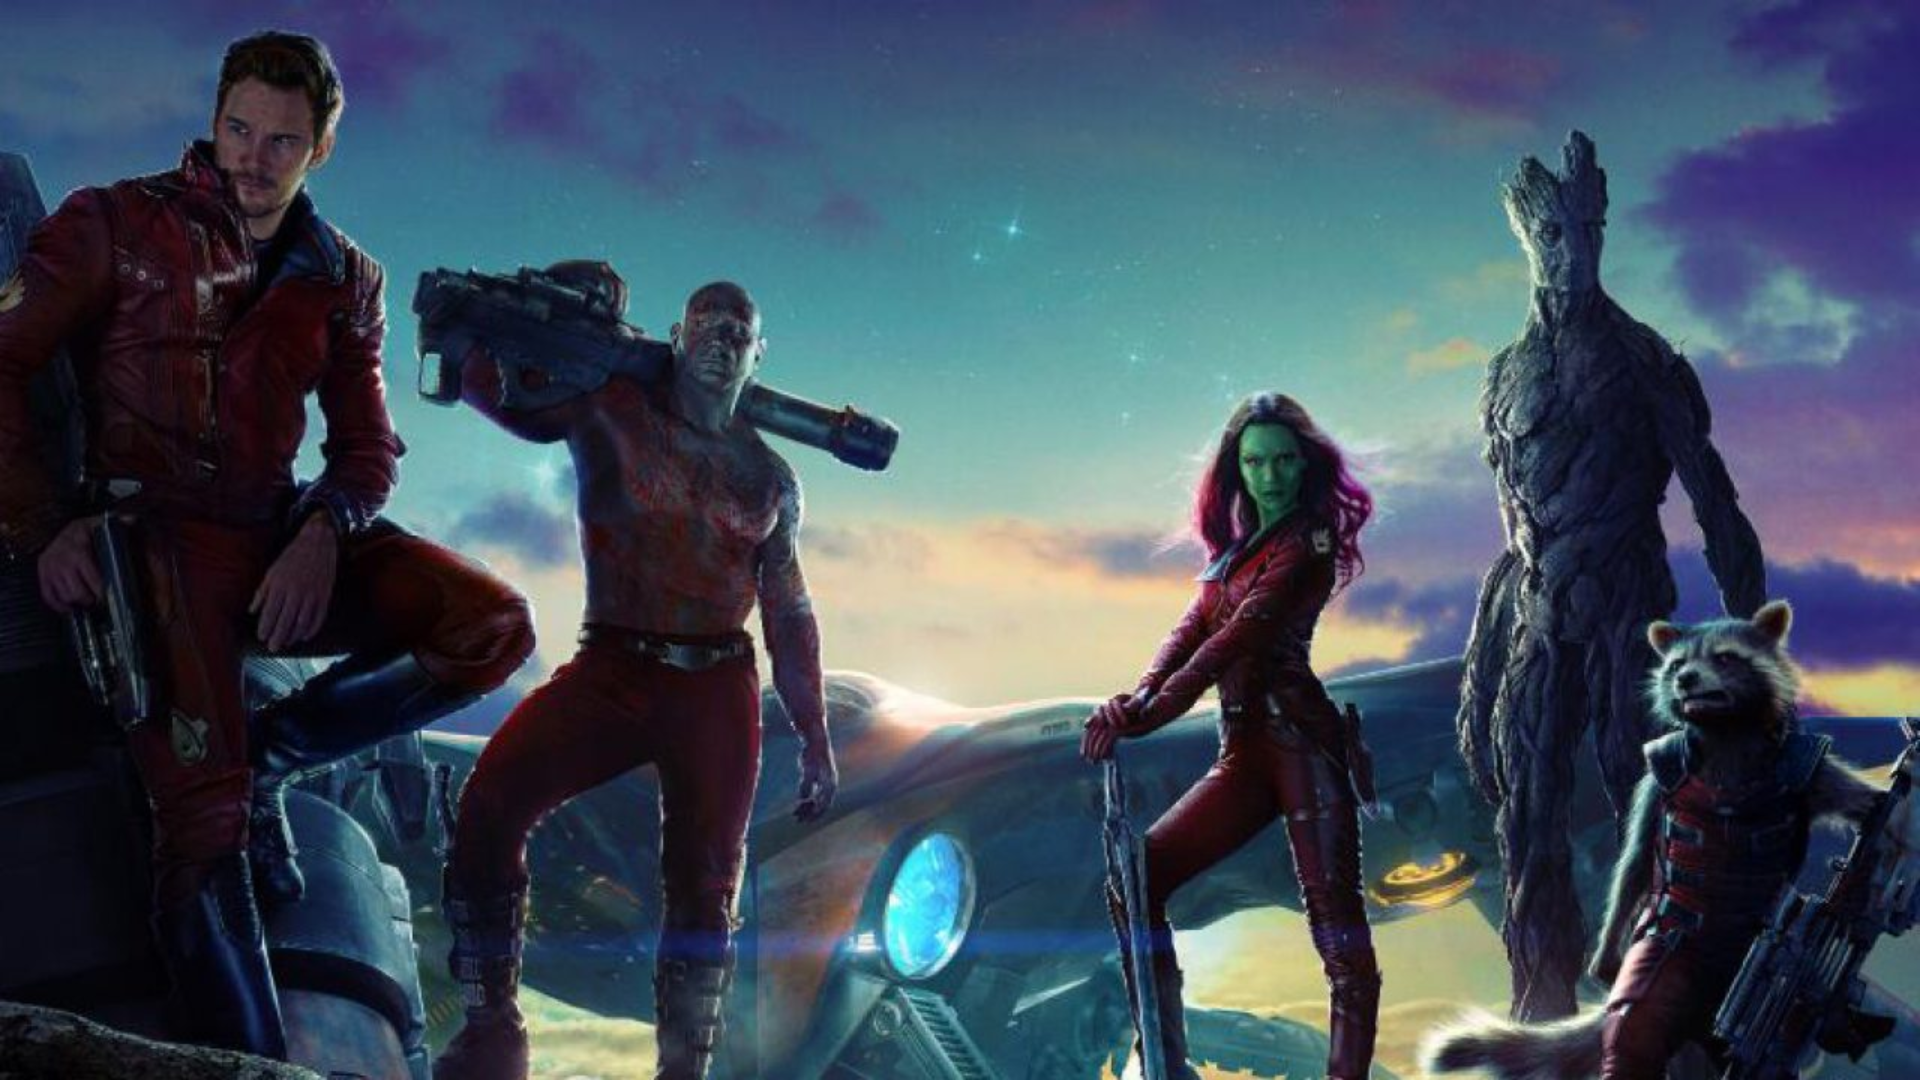 "Guardiões da Galáxia" é importante por apresentar, pela primeira vez, o vilão Thanos em uma cena pós-créditos (Foto: Divulgação/Marvel Studios)